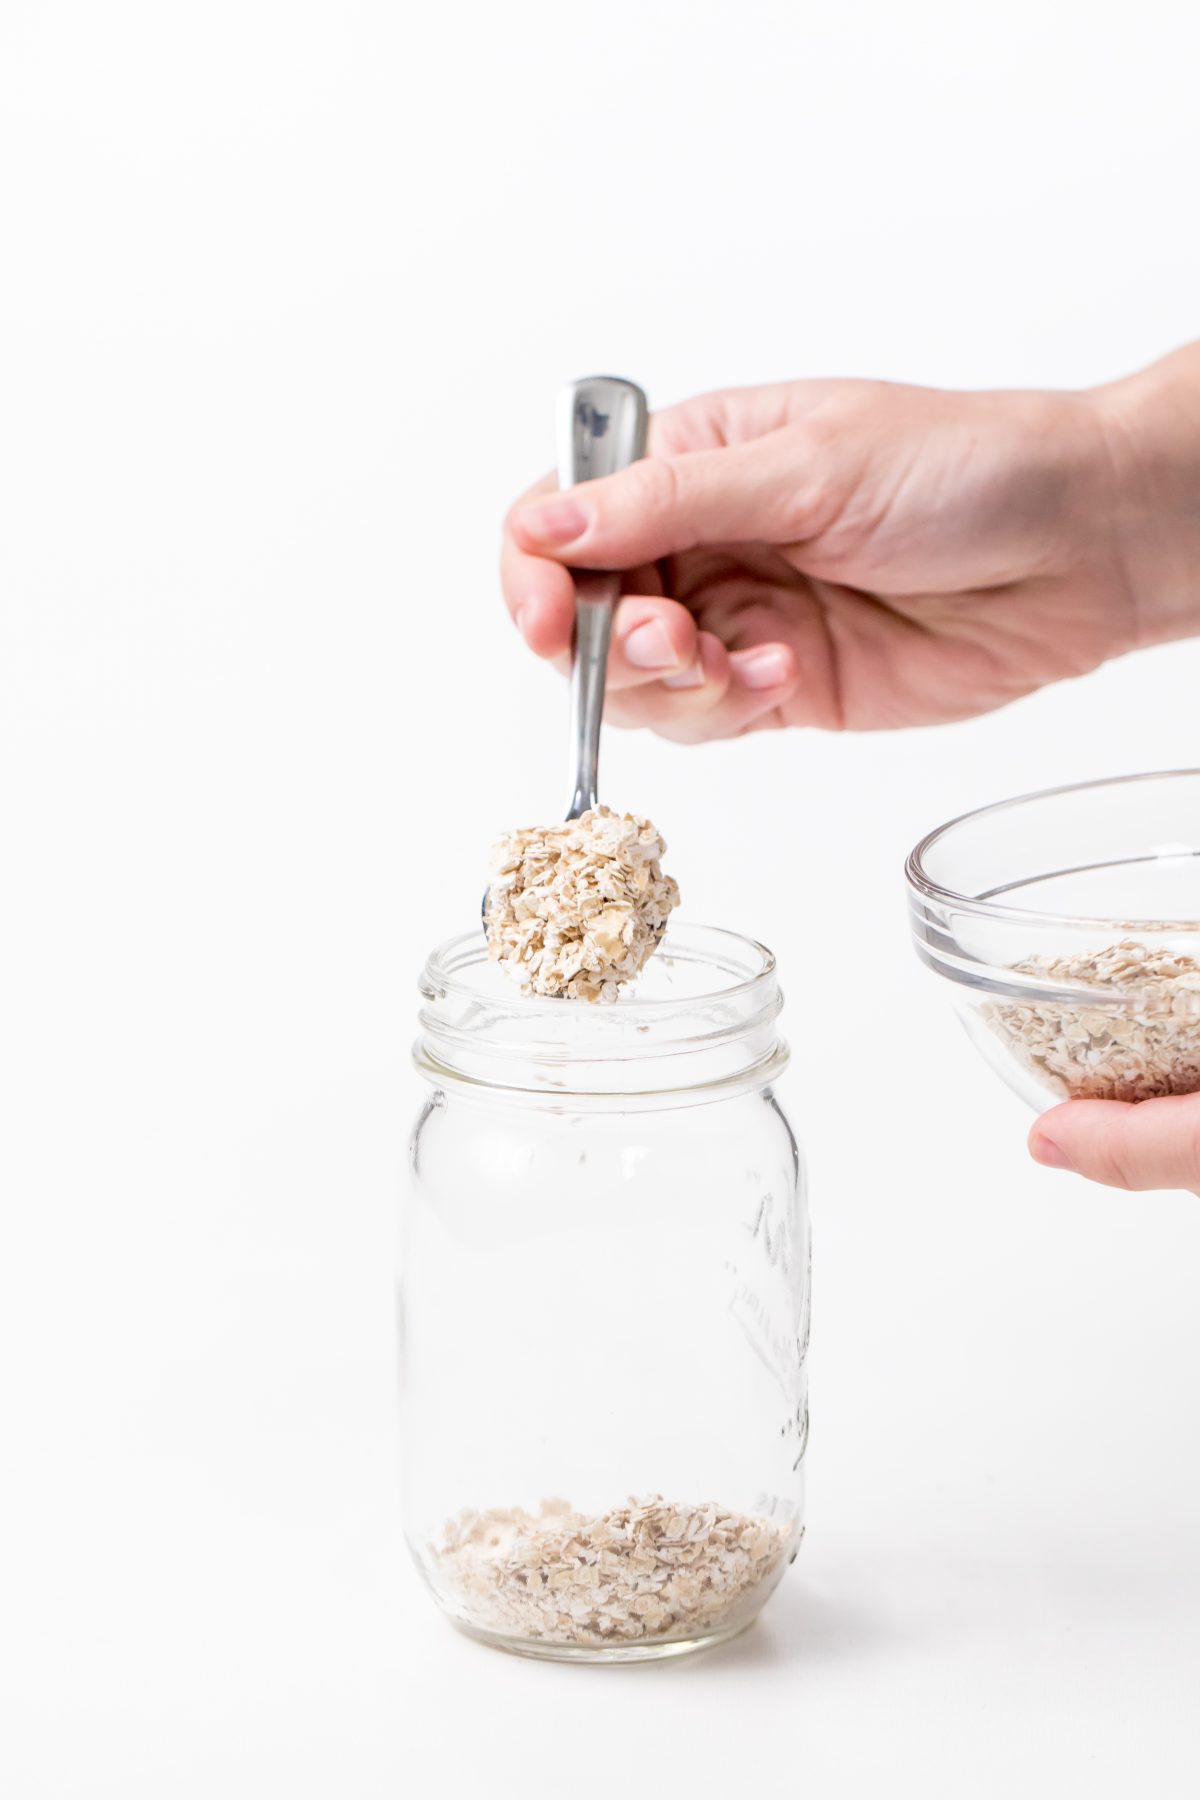 Add oats to mason jar